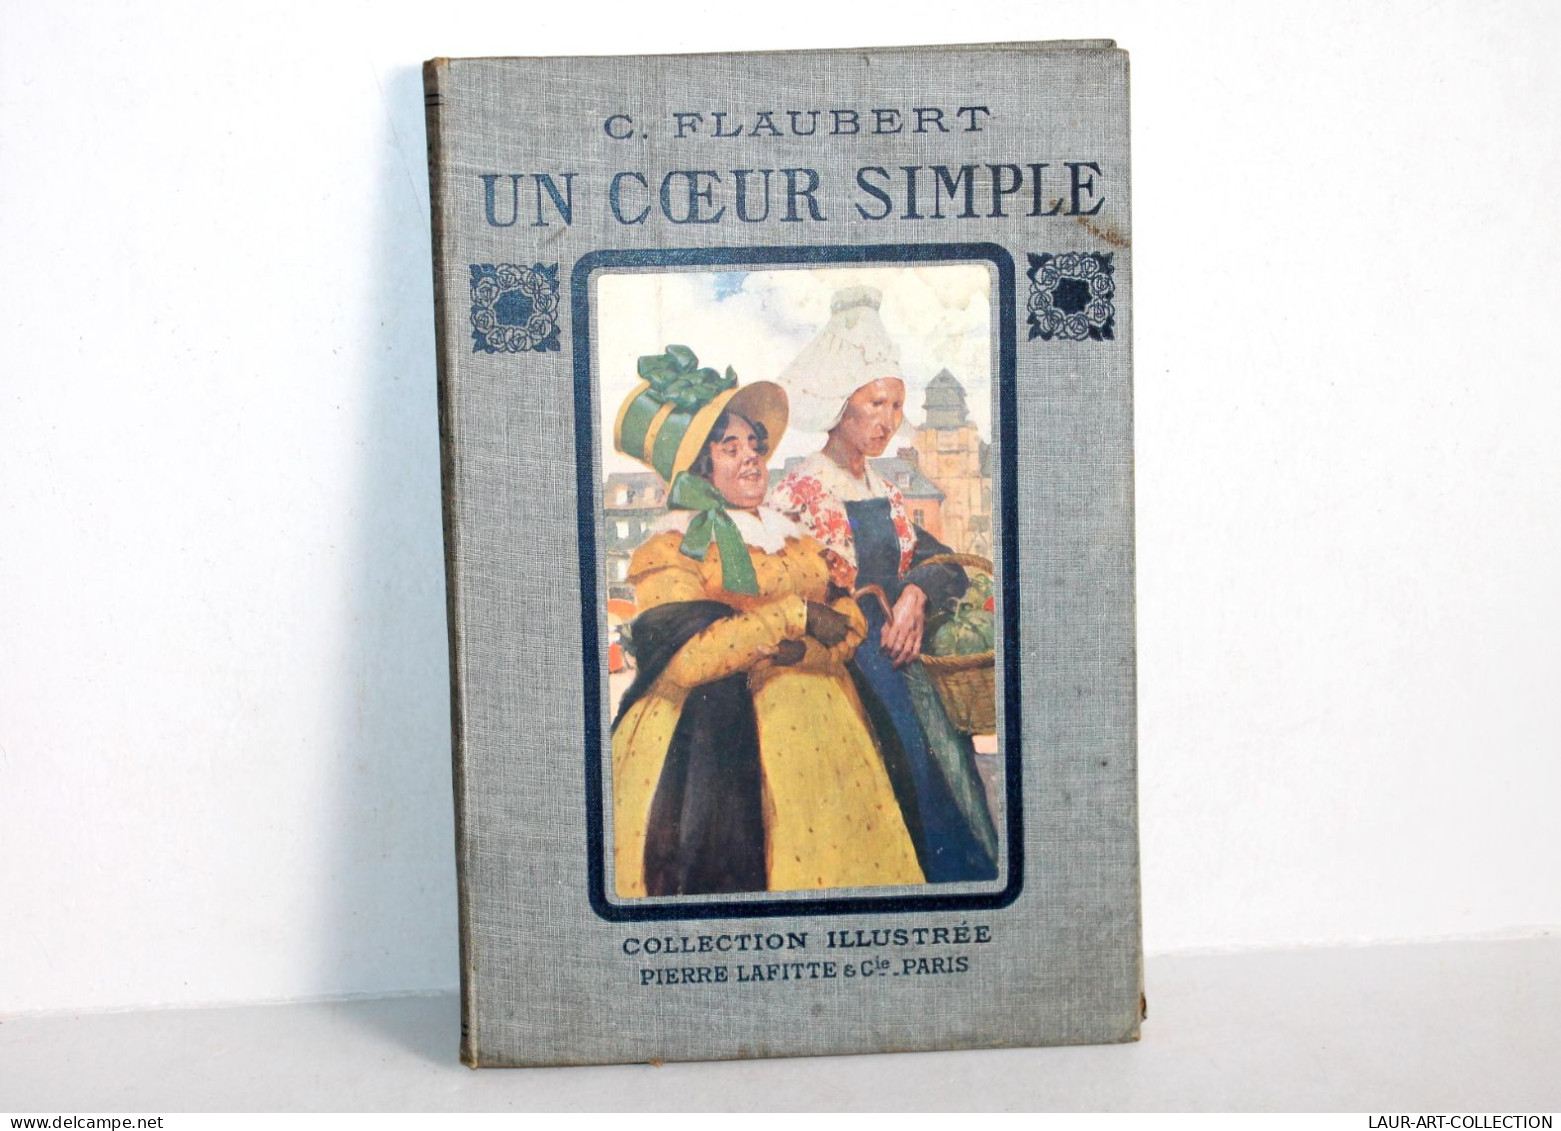 UN COEUR SIMPLE + LEGENDE + GREVE Par G FLAUBERT ILLUSTRATIONS DE R. LELONG 1909 / ANCIEN LIVRE DEBUT 1900 (0603.6) - 1901-1940